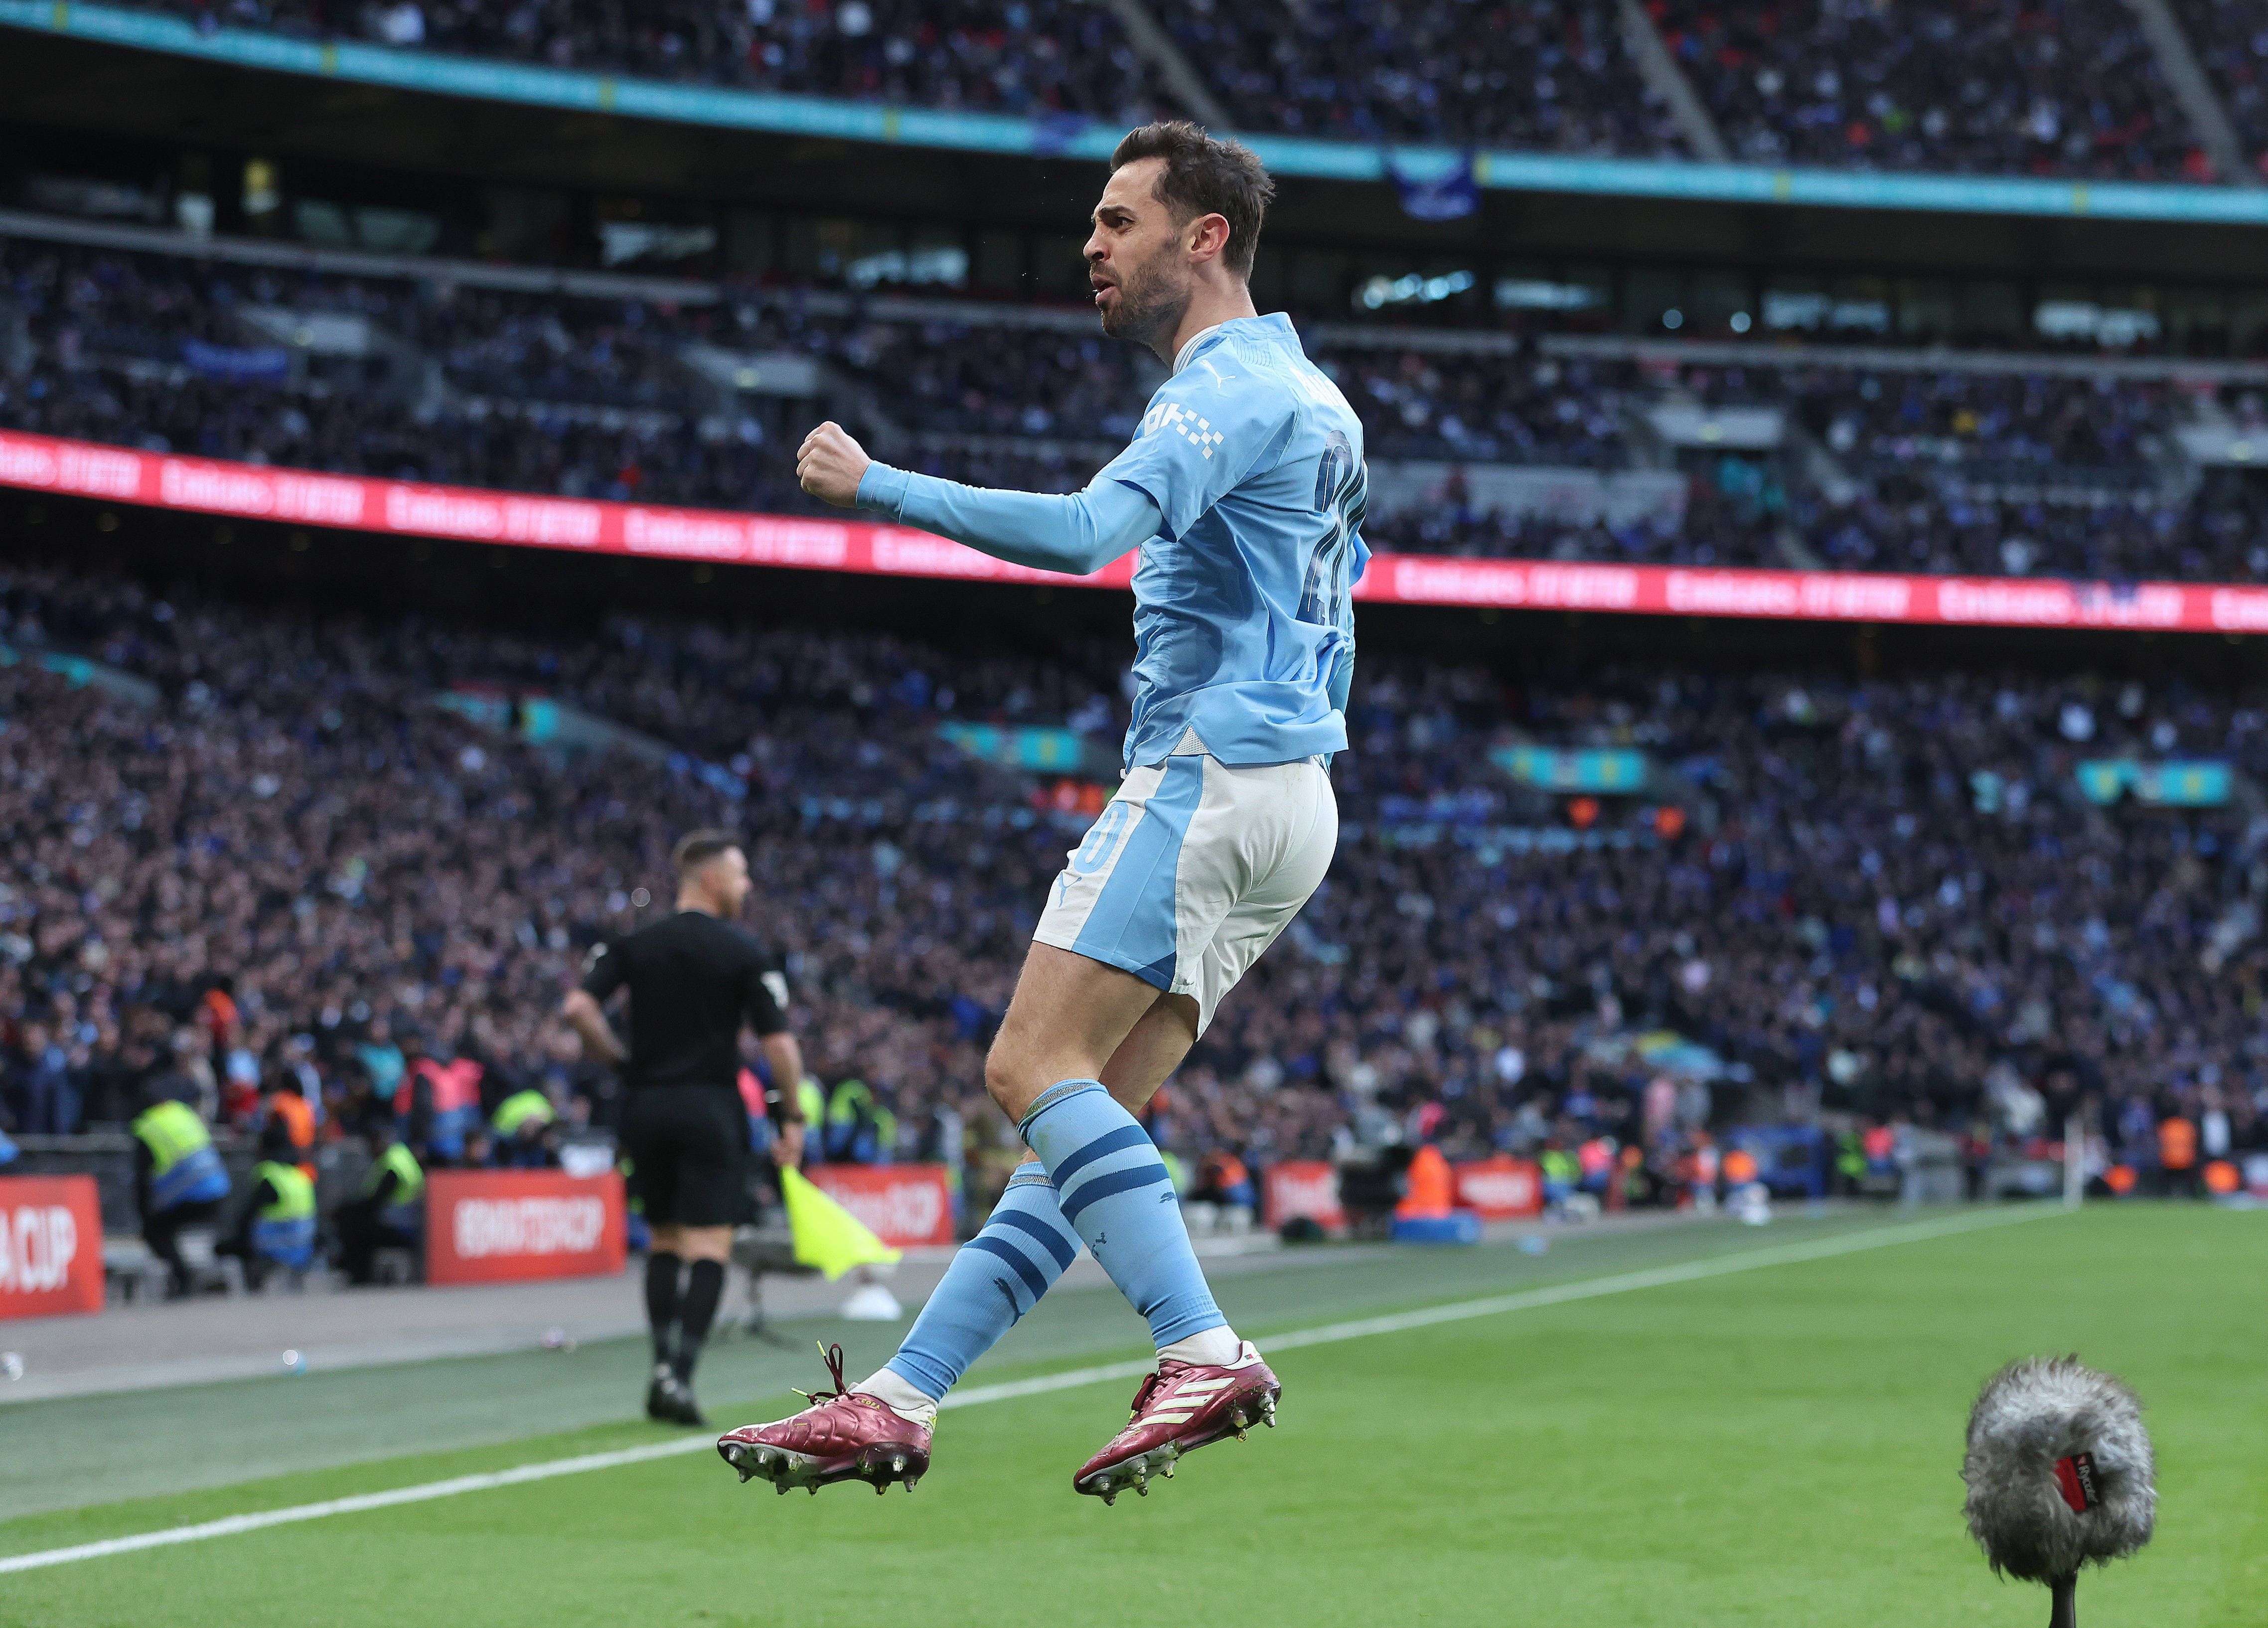 VÍDEO: Bernardo Silva coloca Man. City em vantagem em Wembley perto do fim